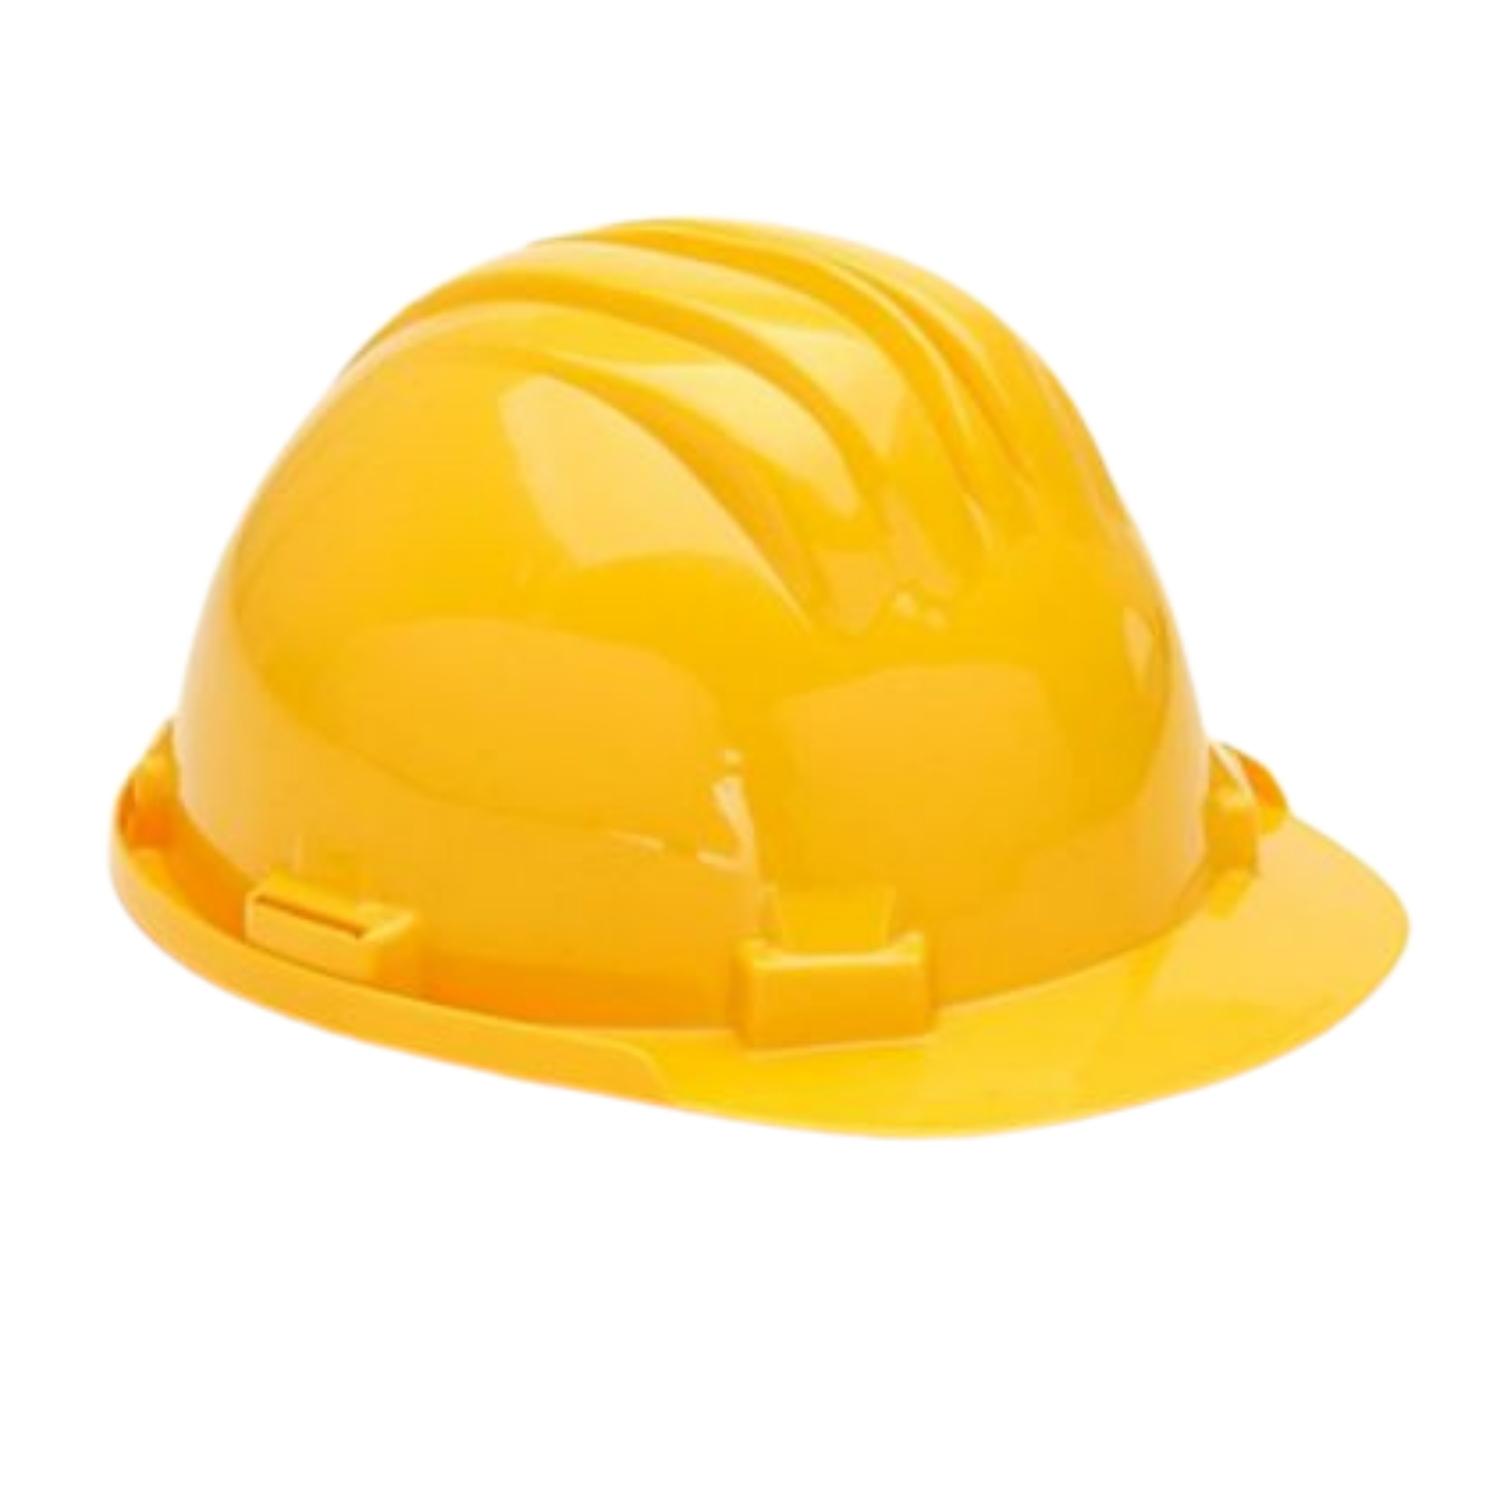 Capacete de Segurança em Polietileno 5-RS Obras Indústria Amarelo Pedreiro Trolha Engenheiro - Amarelo